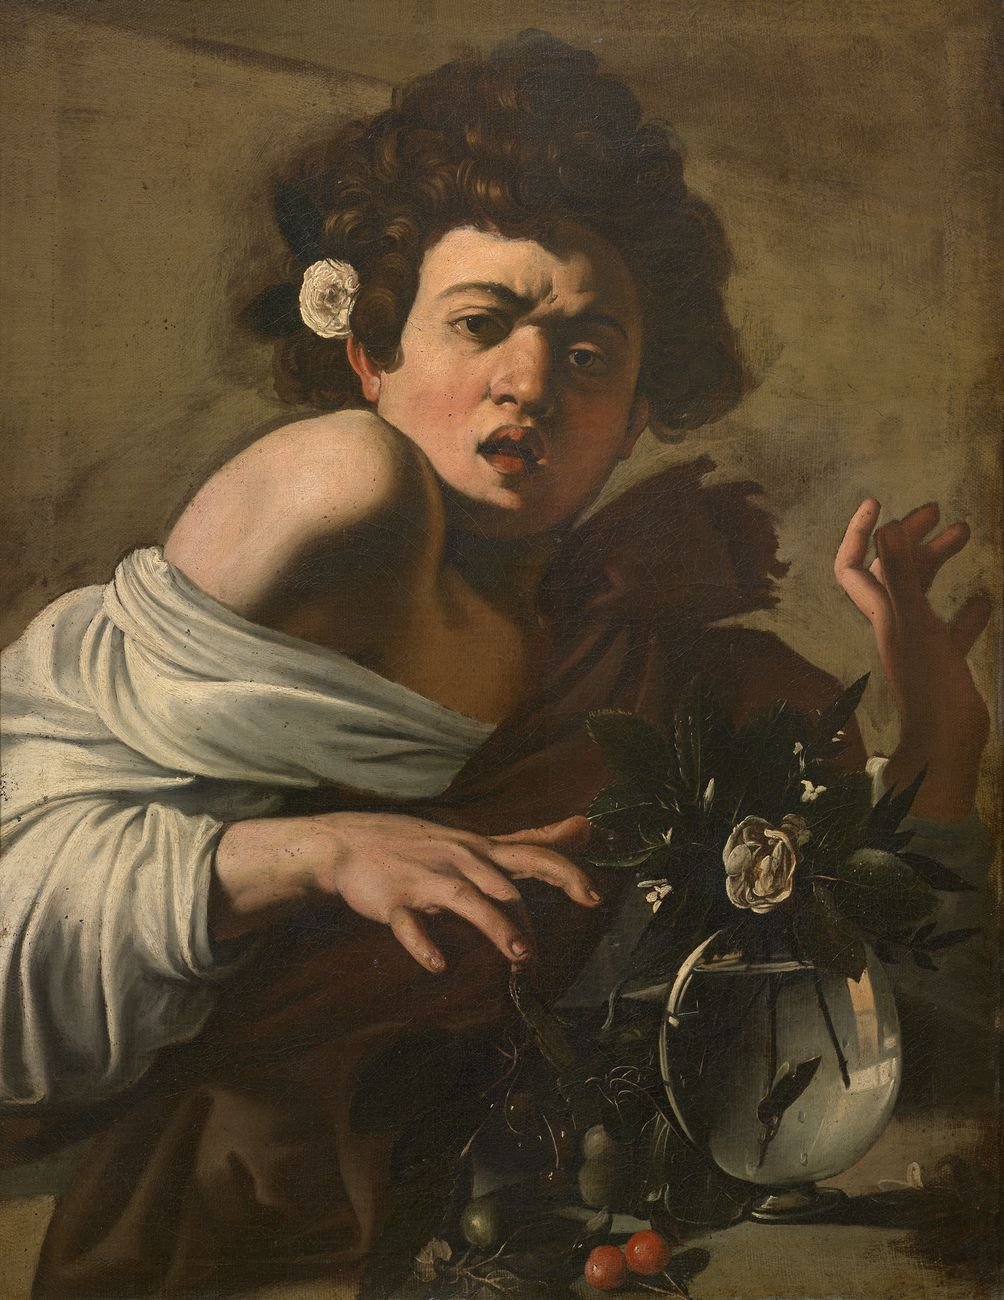 Caravaggio, Fanciullo morso da un ramarro, 1596-1597 ca. Fondazione di Studi di Storia dell’Arte Roberto Longhi, Firenze